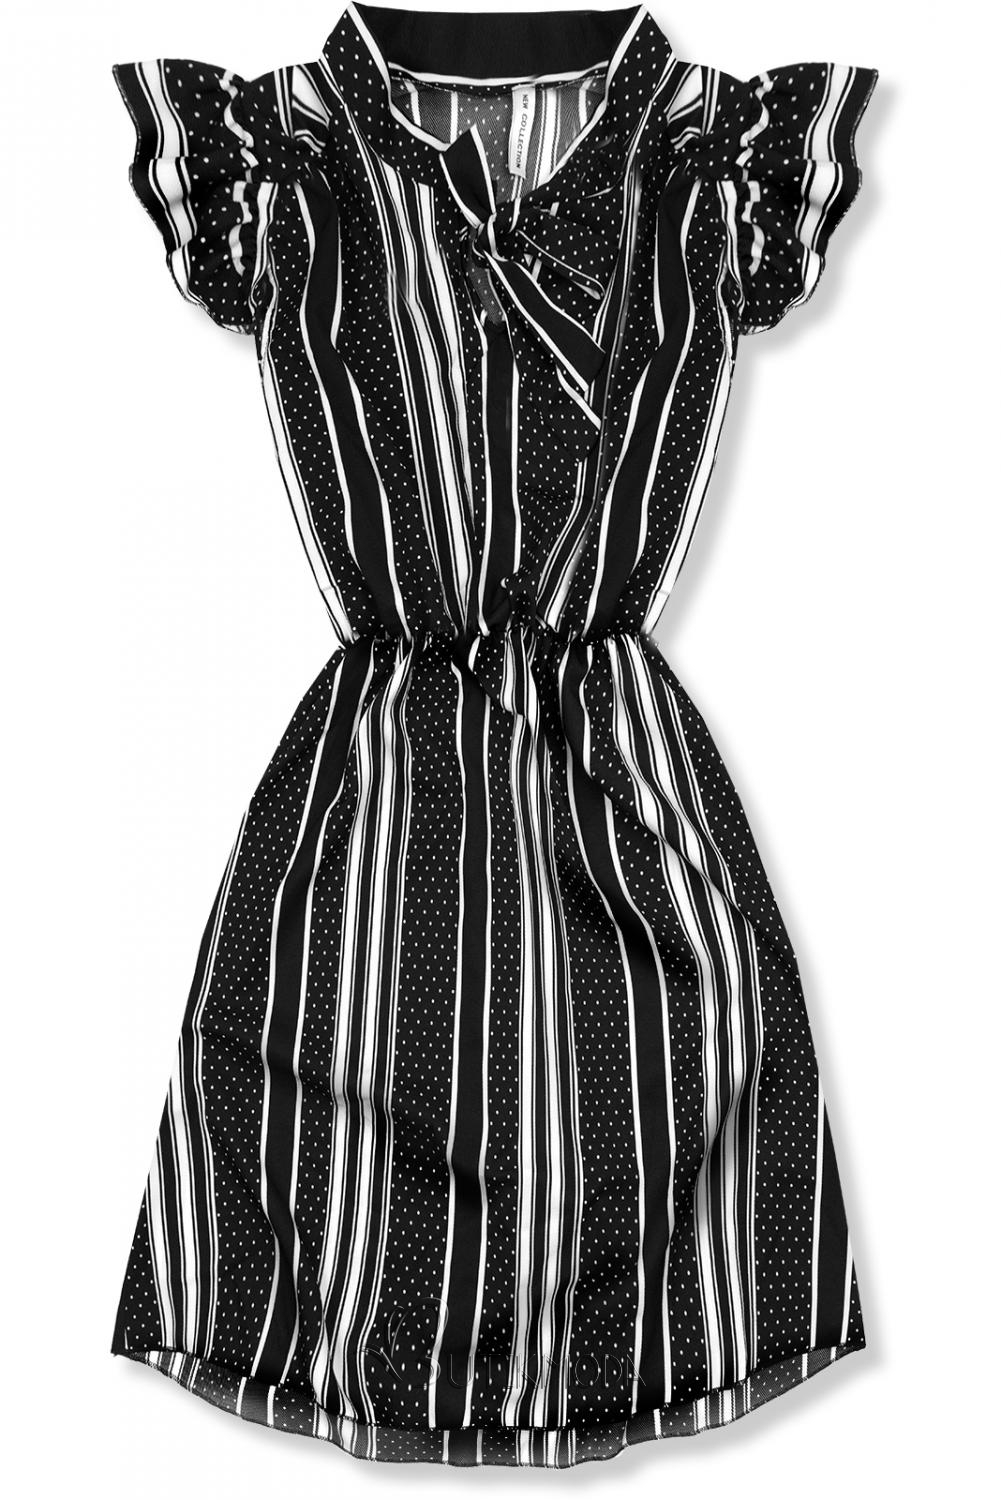 Fekete és fehér színű csíkos ruha masnival